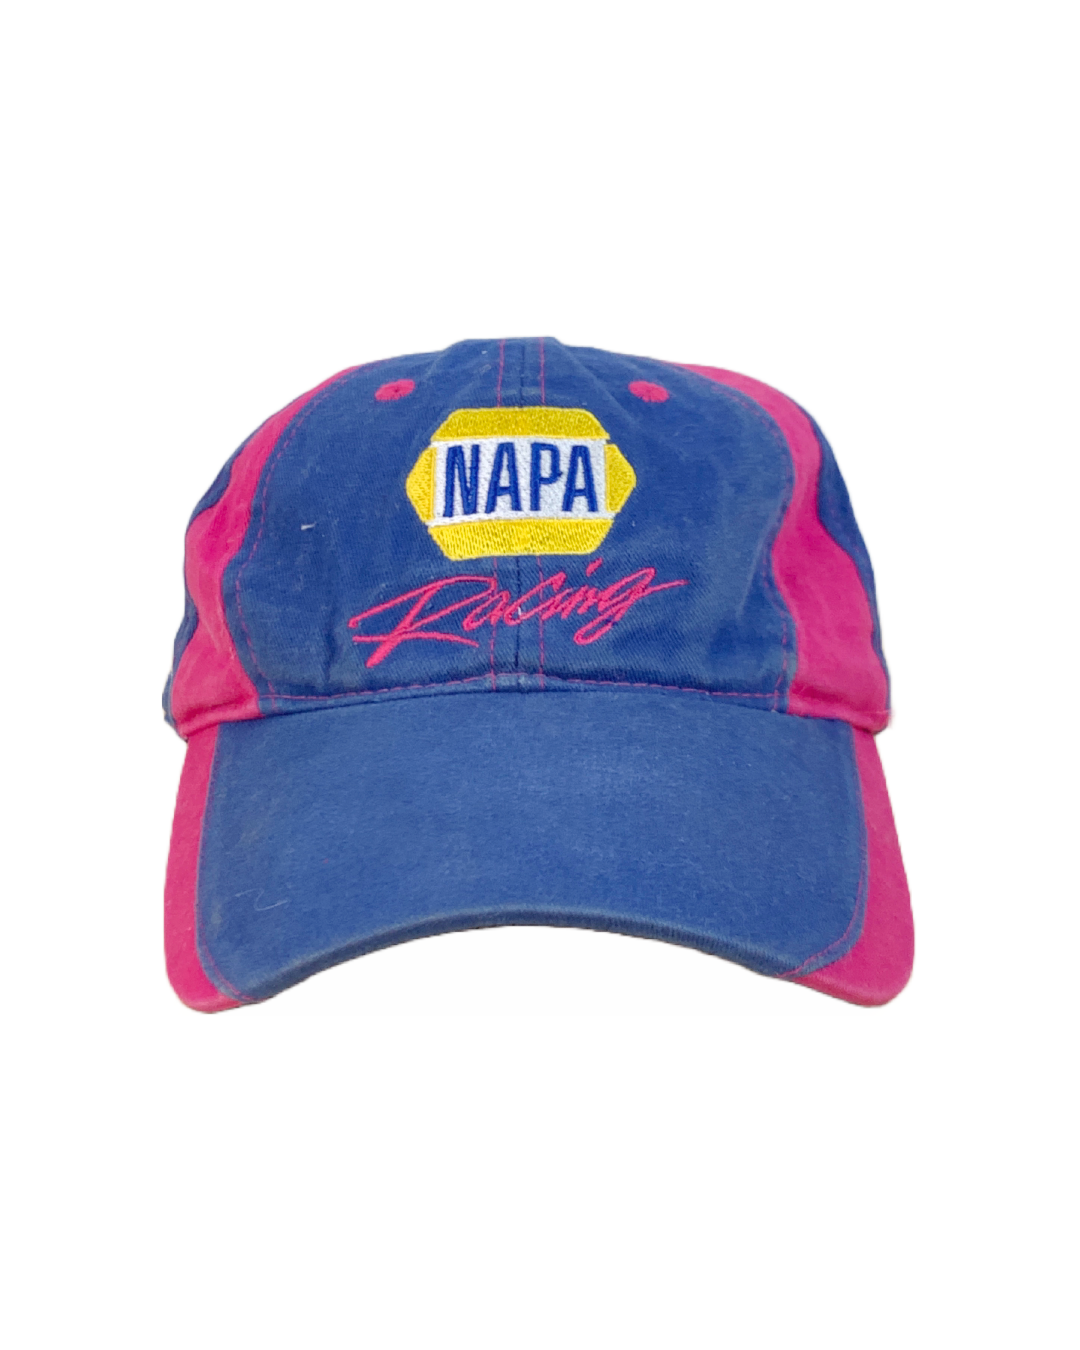 Gorra NAPA Racing Vintage